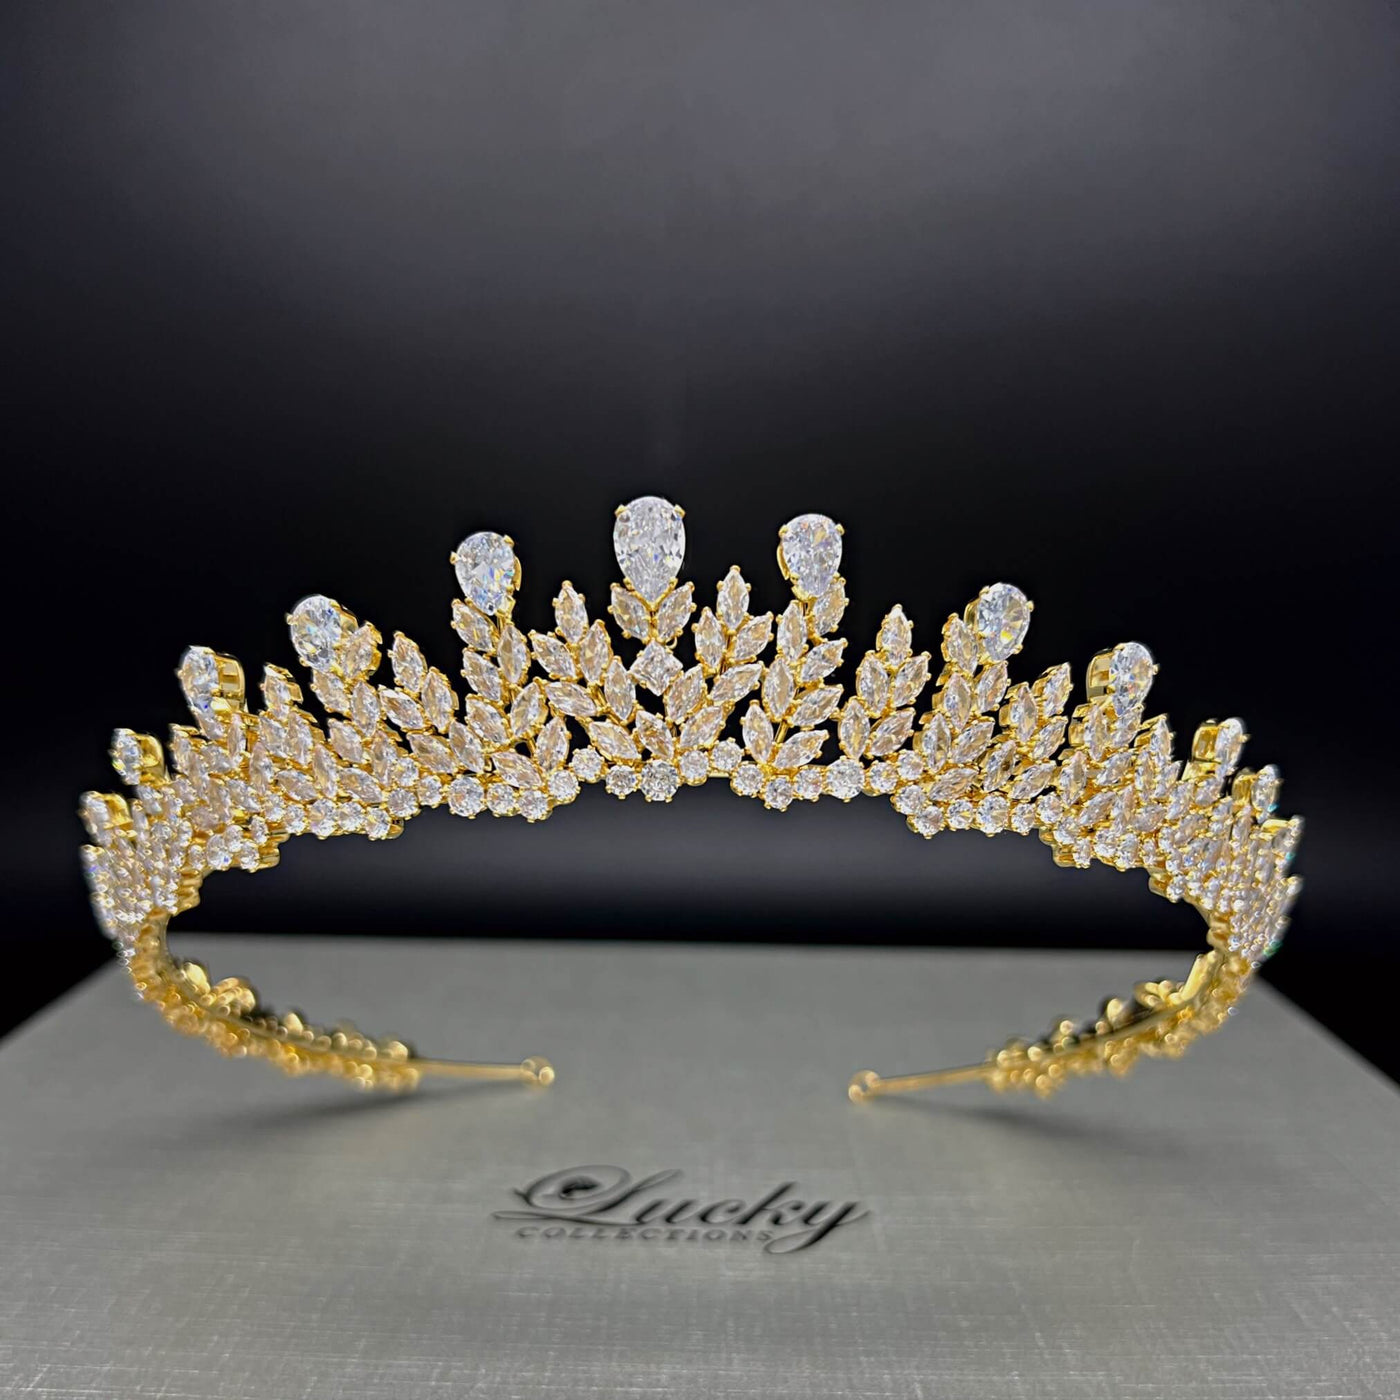 Gold Zirconia Bridal Crown, Quinceanera Tiara, Corona de 15 Anos Graceful Design by Lucky Collections™